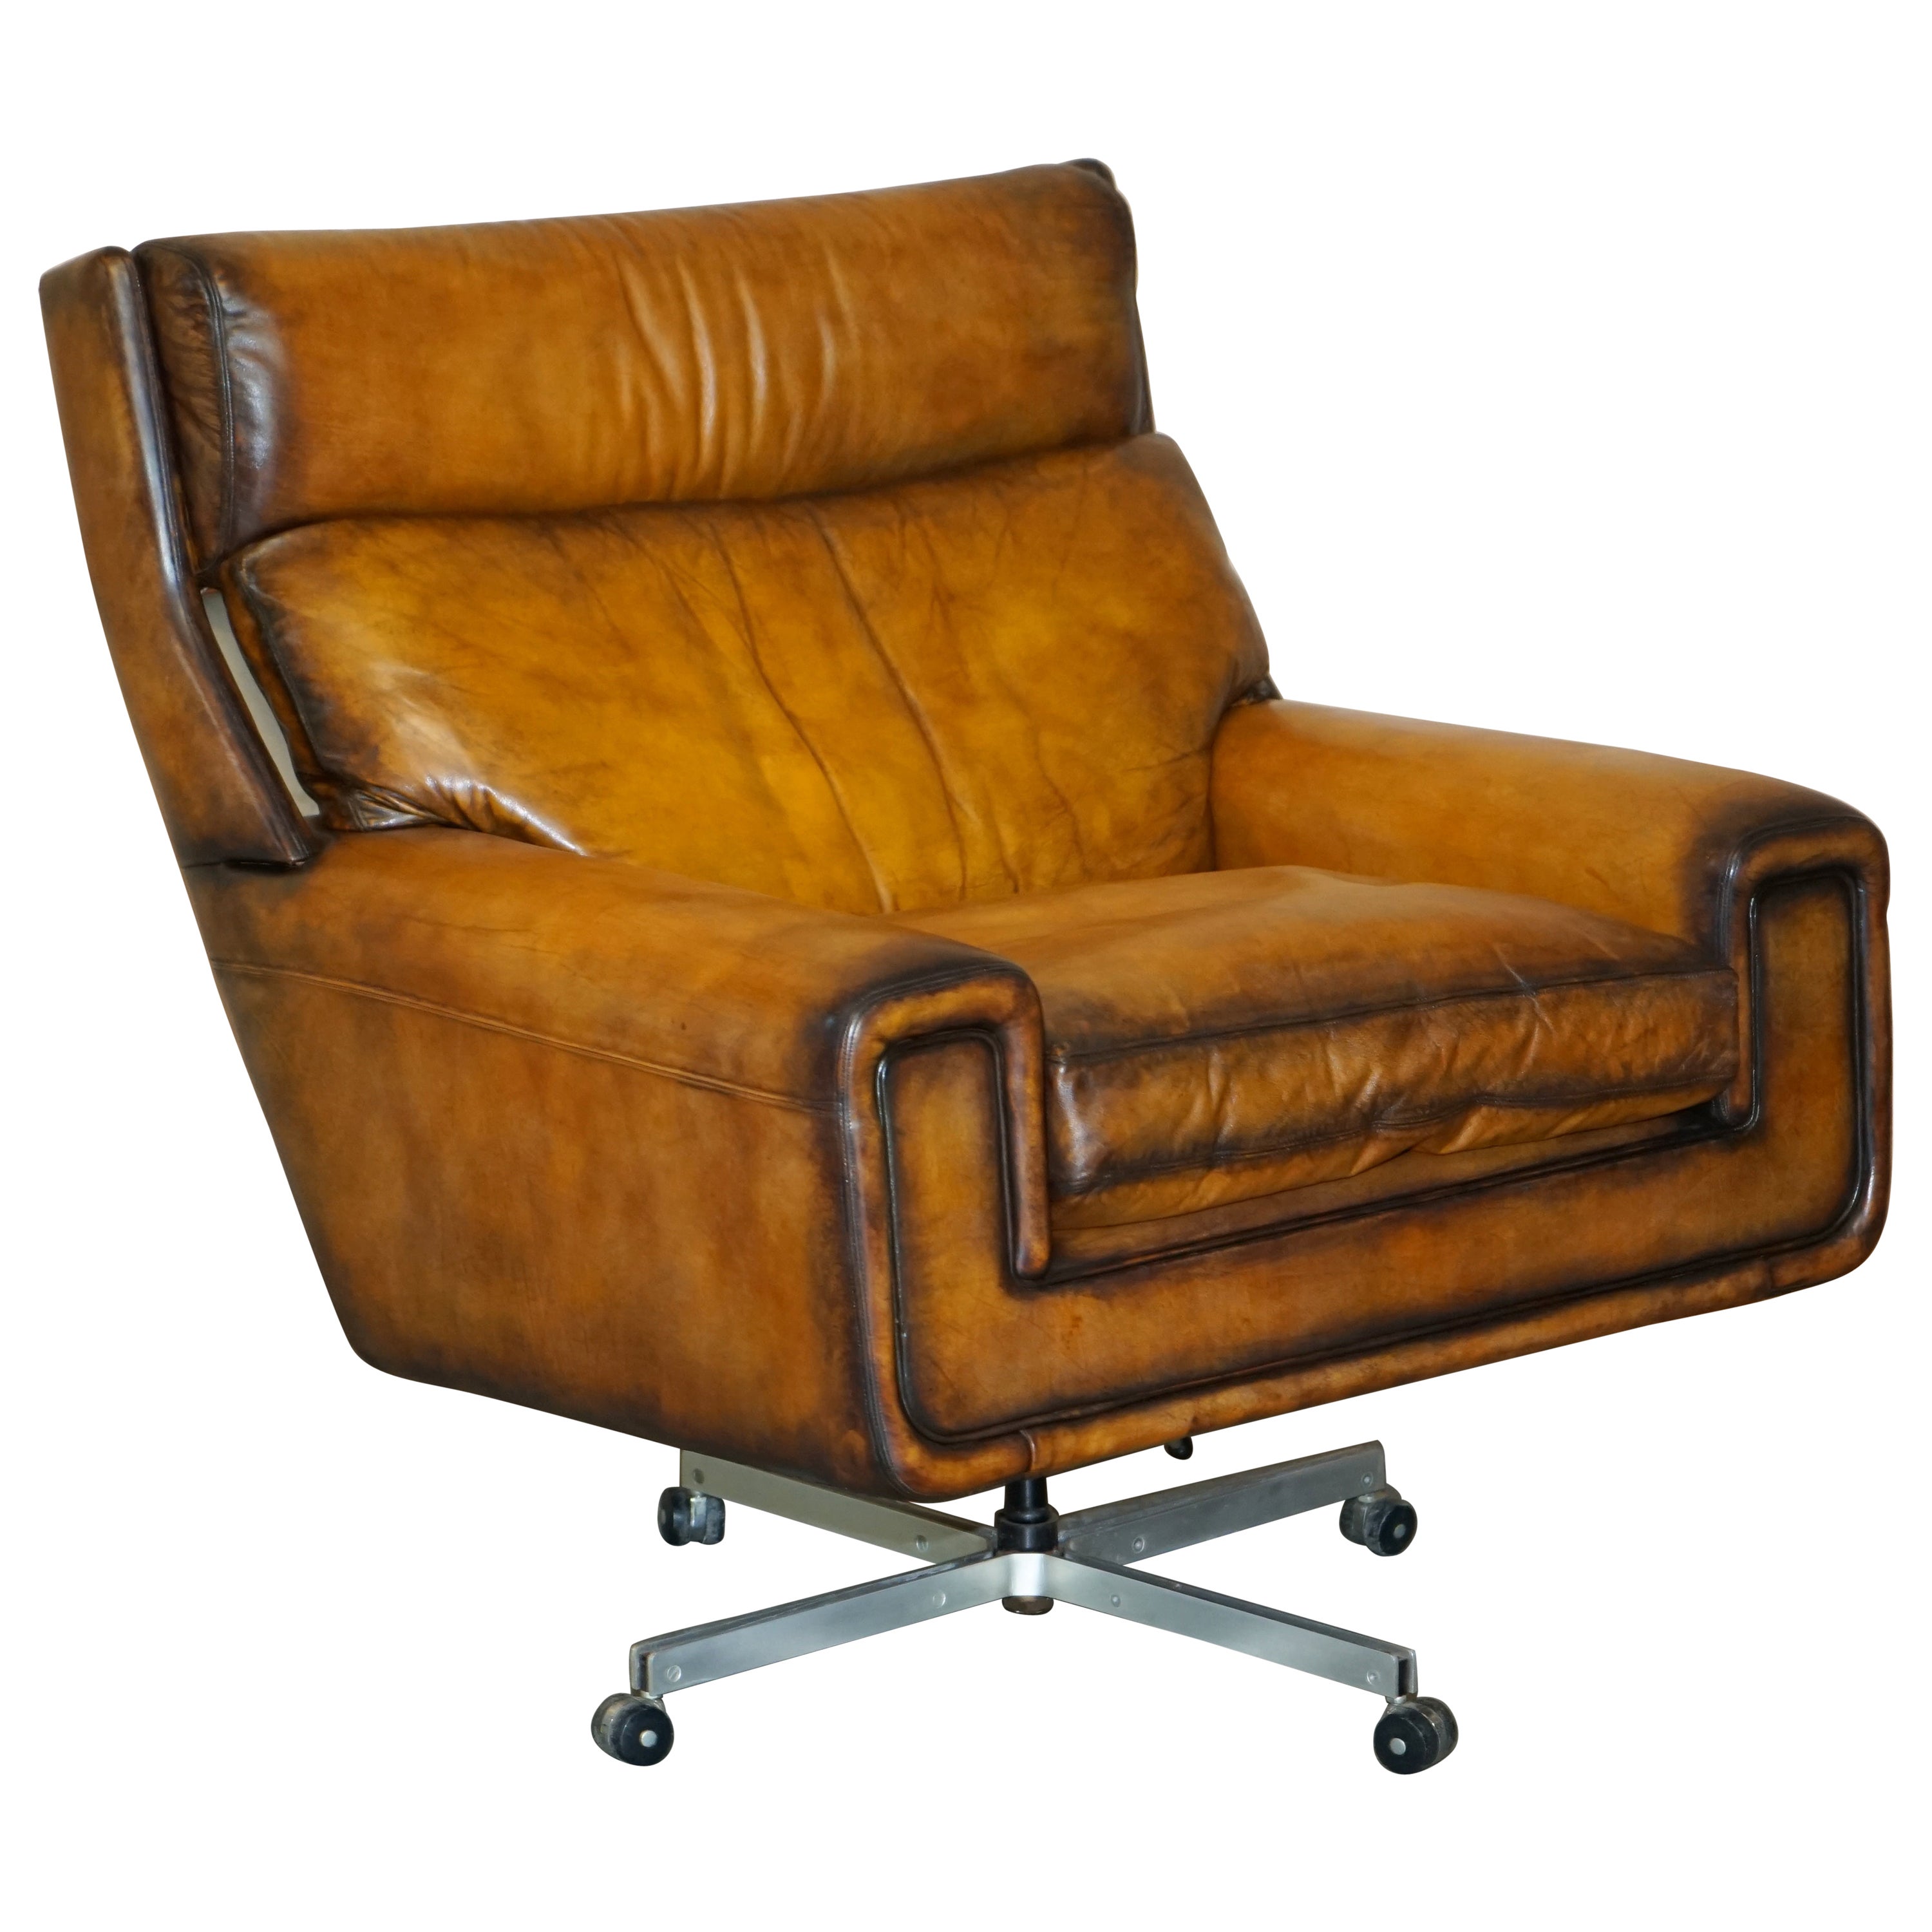 ensemble de pièces de fauteuil pivotant en cuir brun WHiSKY des années 1970, restauré et teinté à la main